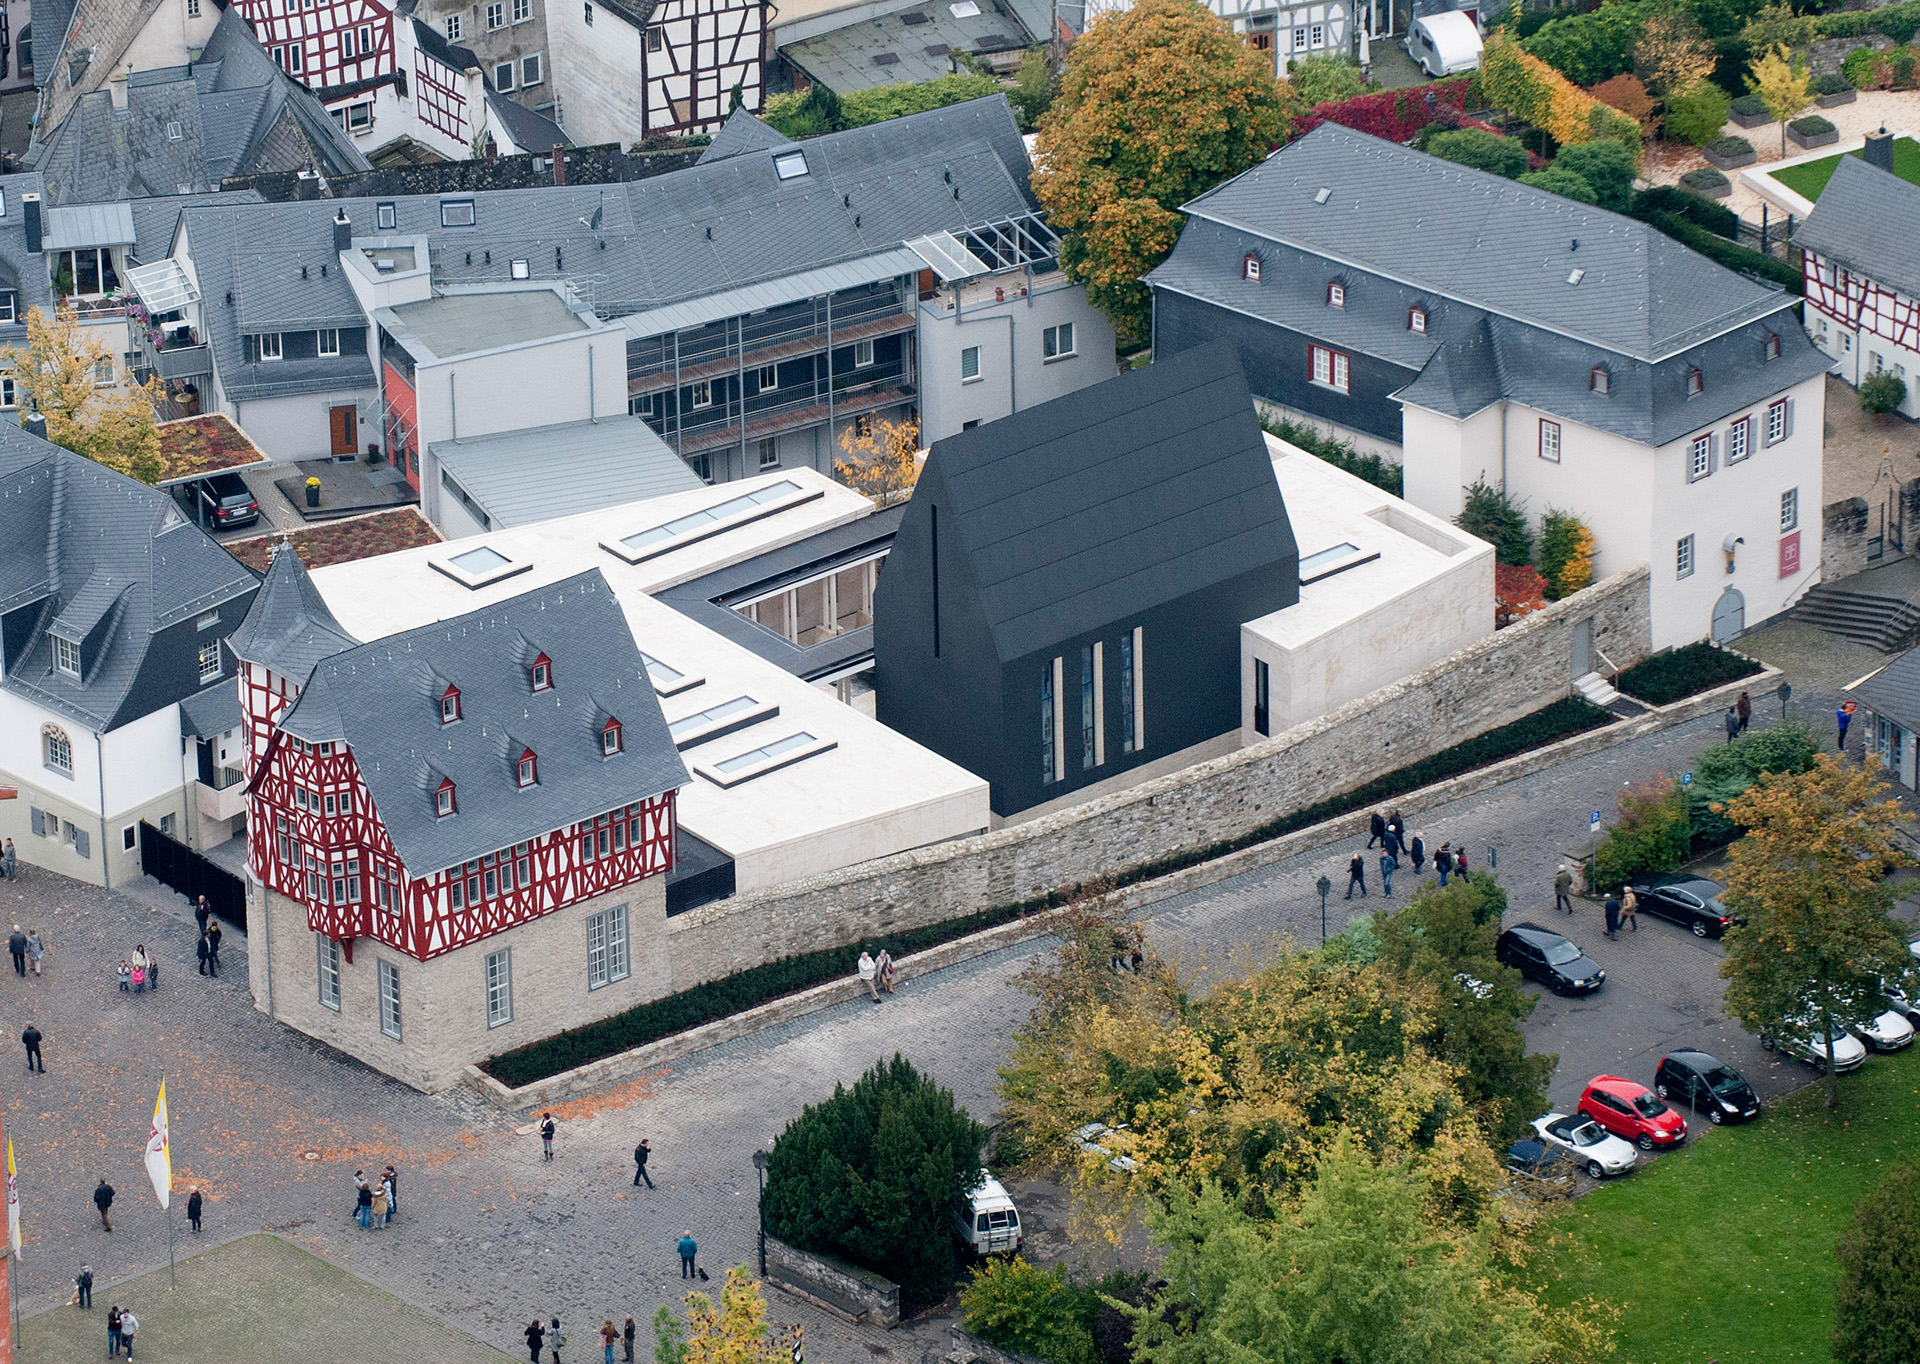 Dom und Diözesanzentrum Limburg - Oberhalb der Lahn und Altstadt liegt der Limburger Dom St. Georg sowie der neu erbaute Dienst- und Wohnsitz des Bischofs Tebartz-van Elst